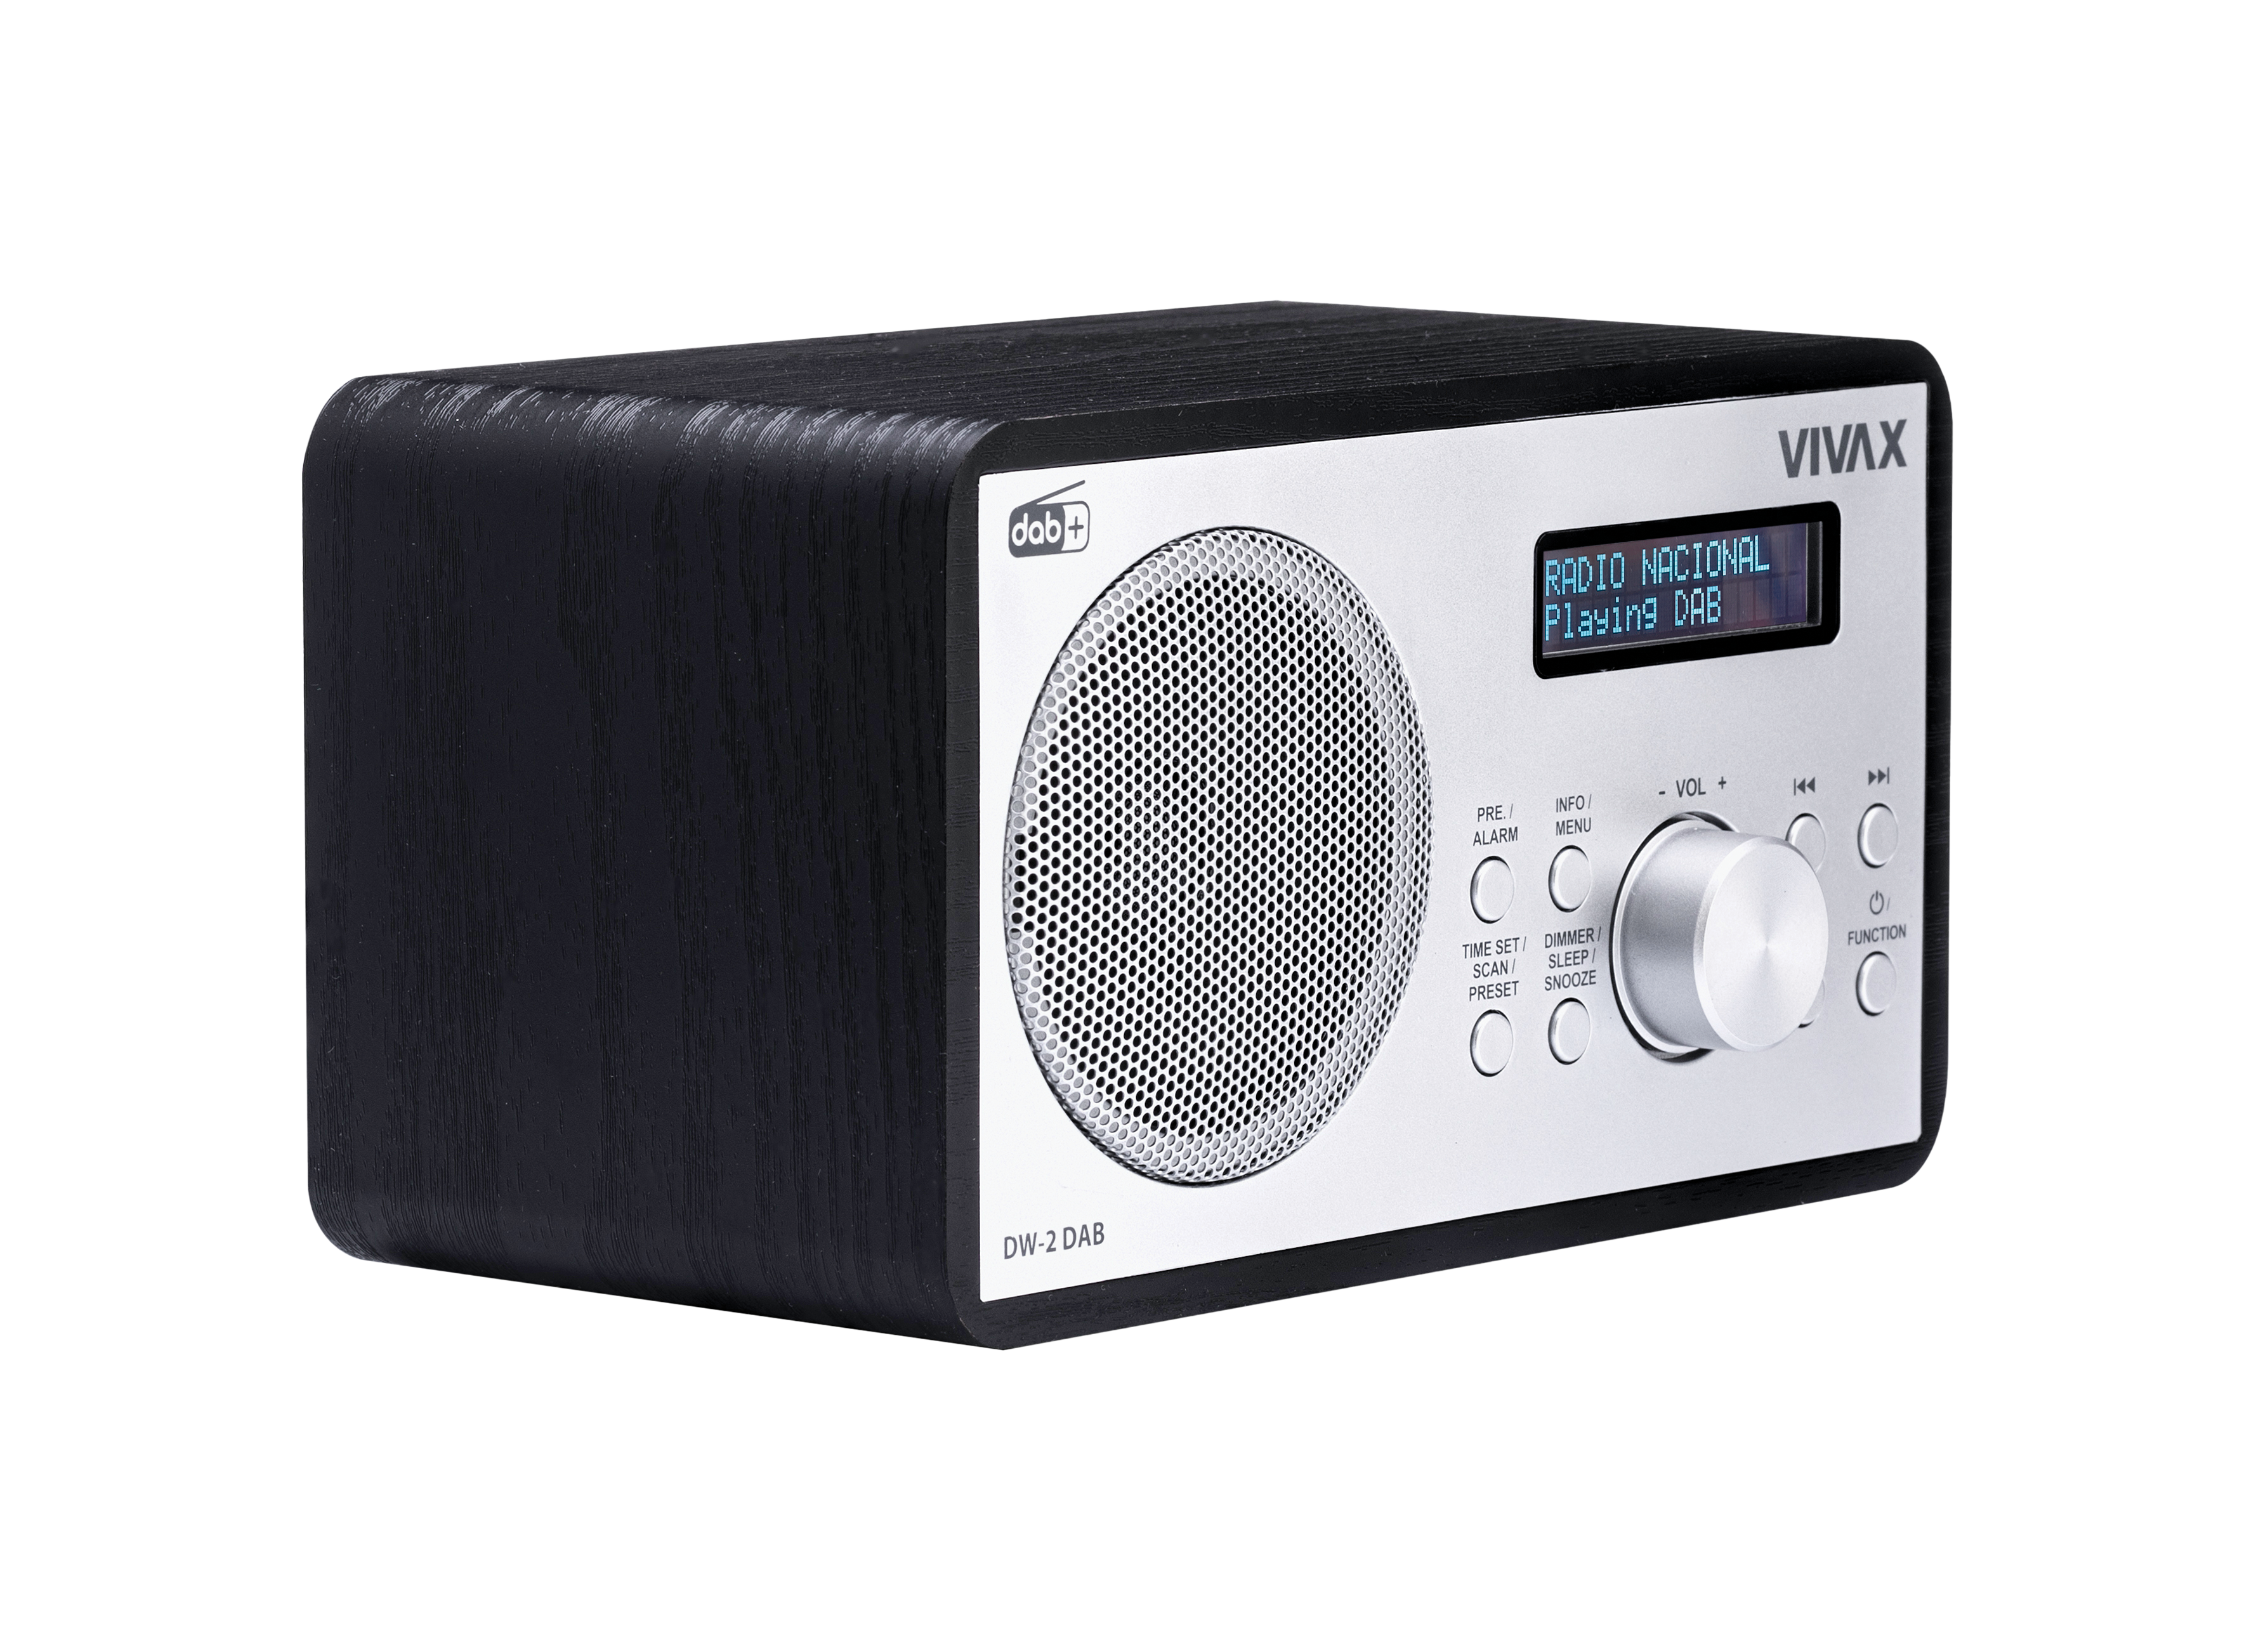 VIVAX - VIVAX FM DAB radio DW-2 DAB Black - VIVAX